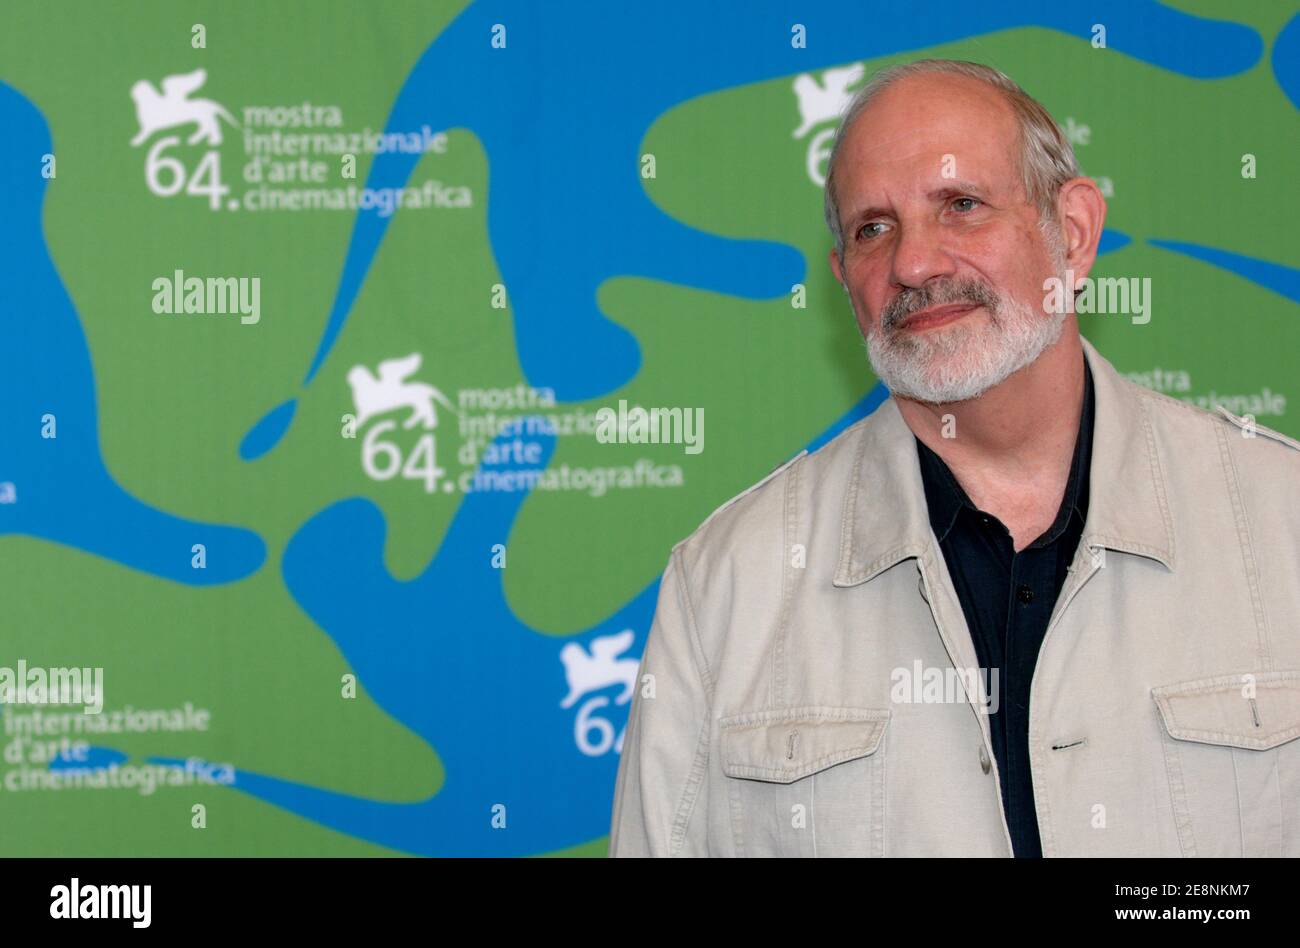 Regisseur Brian De Palma posiert für Bilder während der Fotozelle für 'Redigiert' beim 64. Jährlichen Filmfestival in Venedig, Italien, am 31. August 2007. Foto von Nicolas Khayat/ABACAPRESS.COM Stockfoto